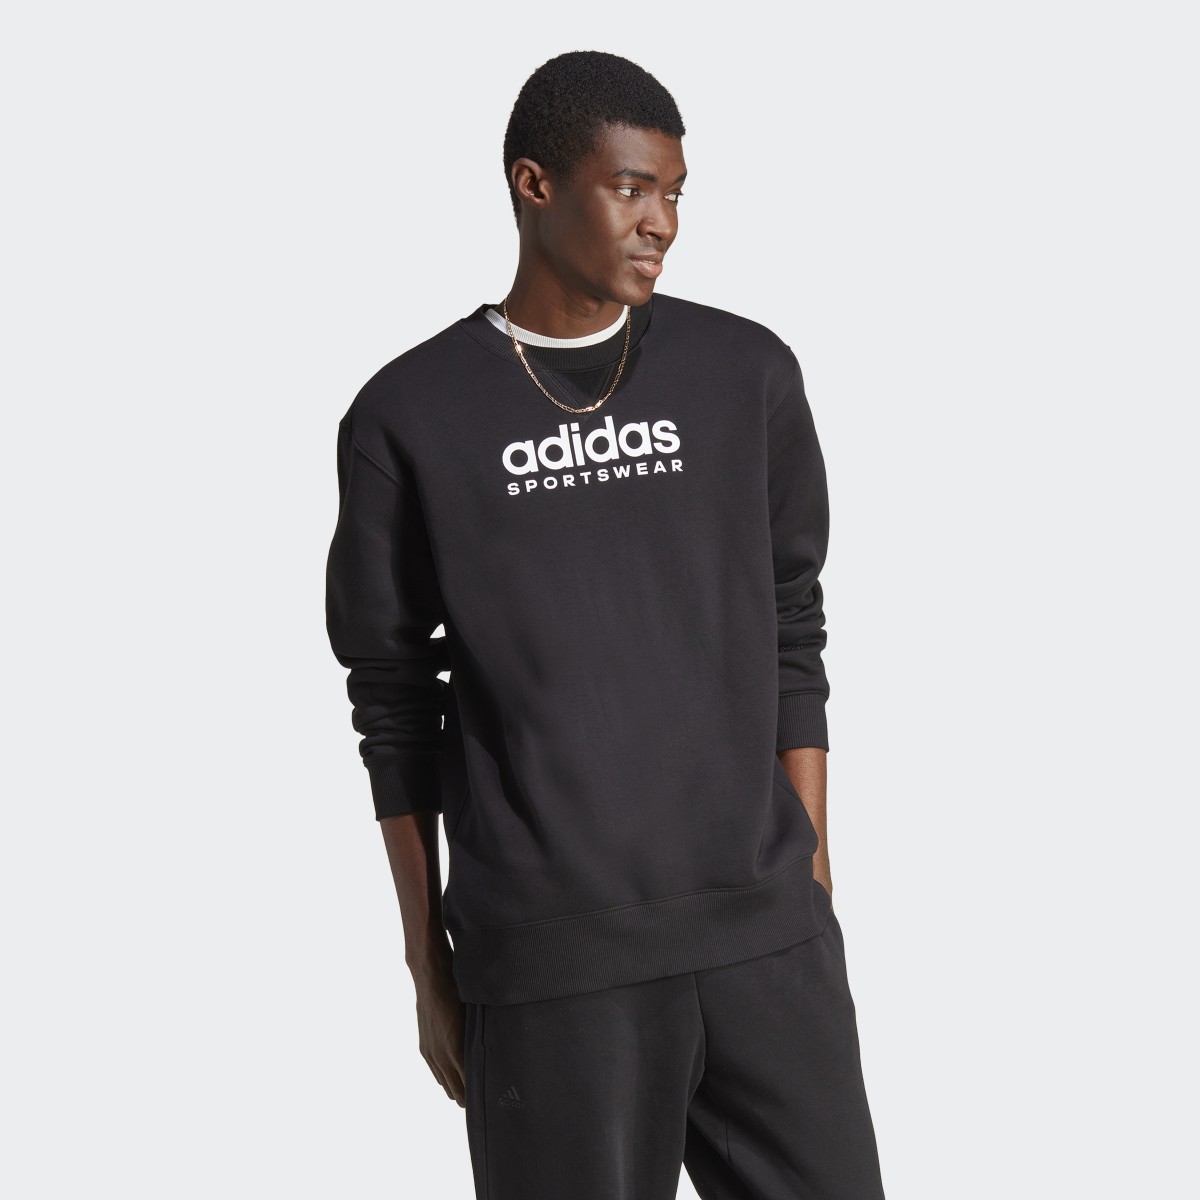 Adidas All SZN Fleece Graphic Sweatshirt. 5